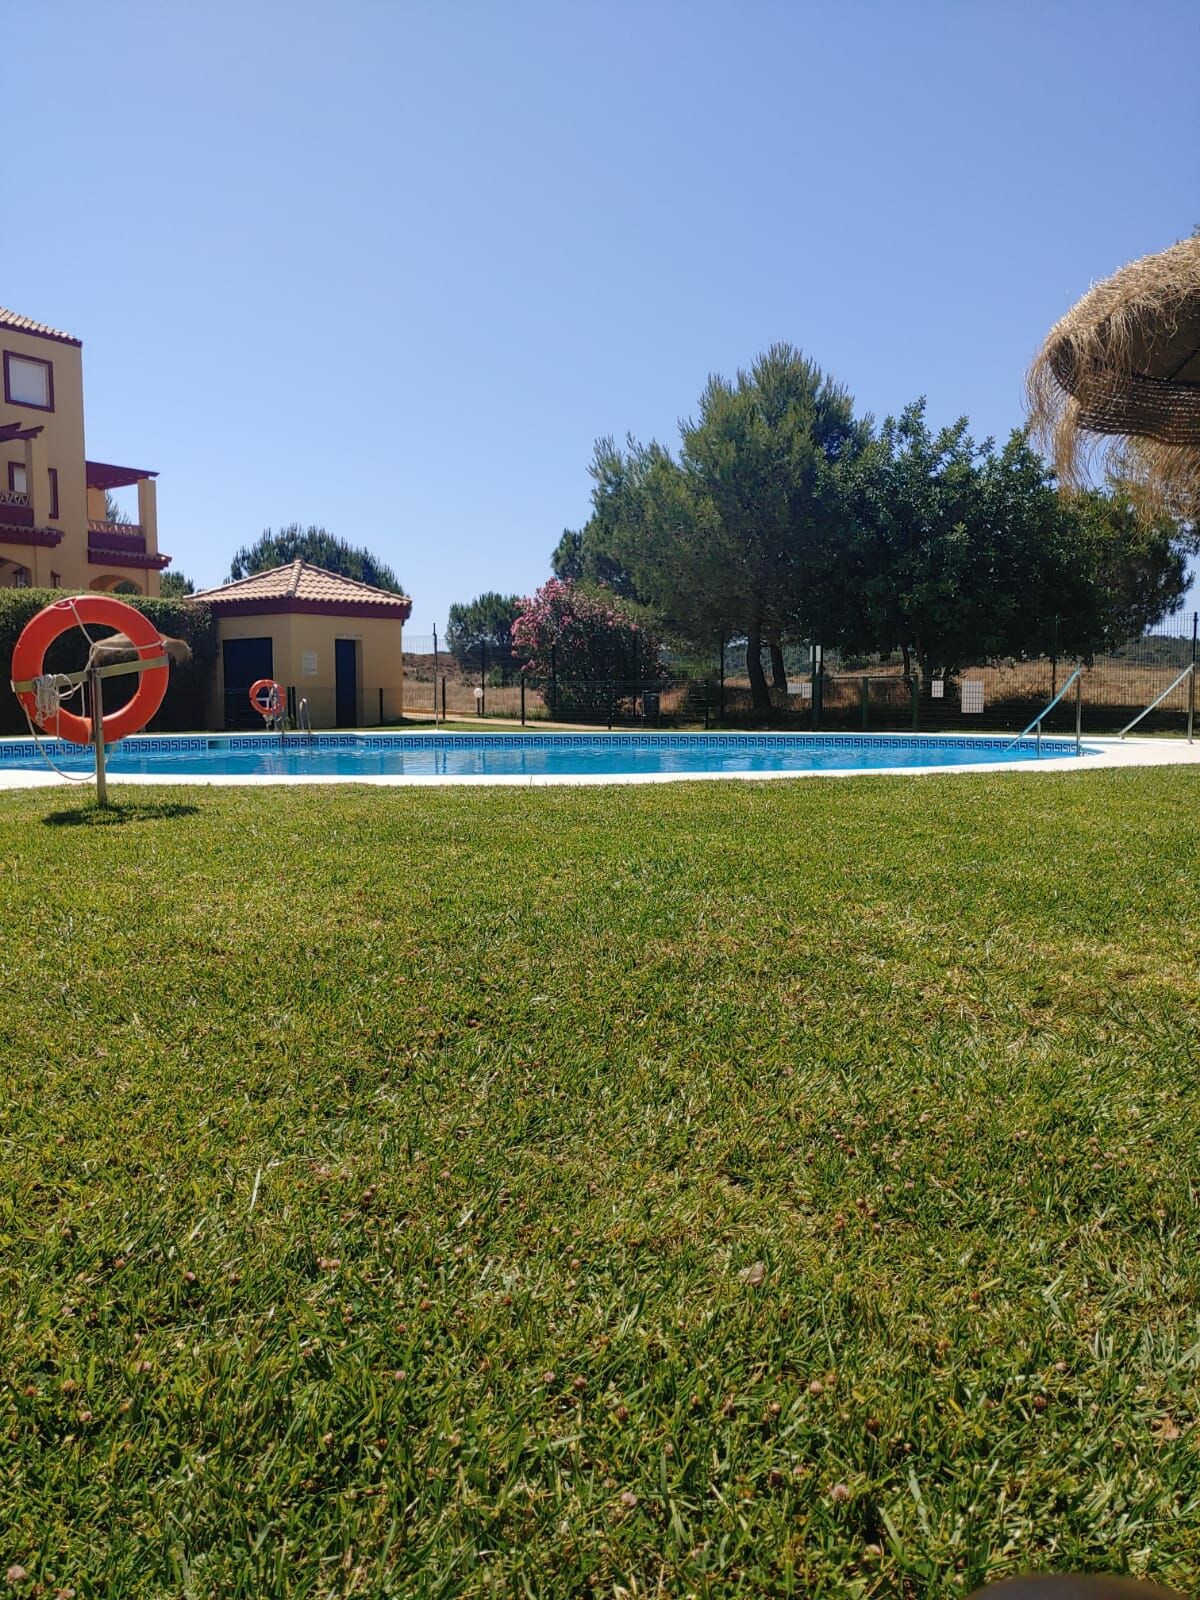 美丽的公寓，配备游泳池、私人花园和公共区域，配备花园、游乐场、划桨网球场和烧烤。距离葡萄牙仅3分钟路程。